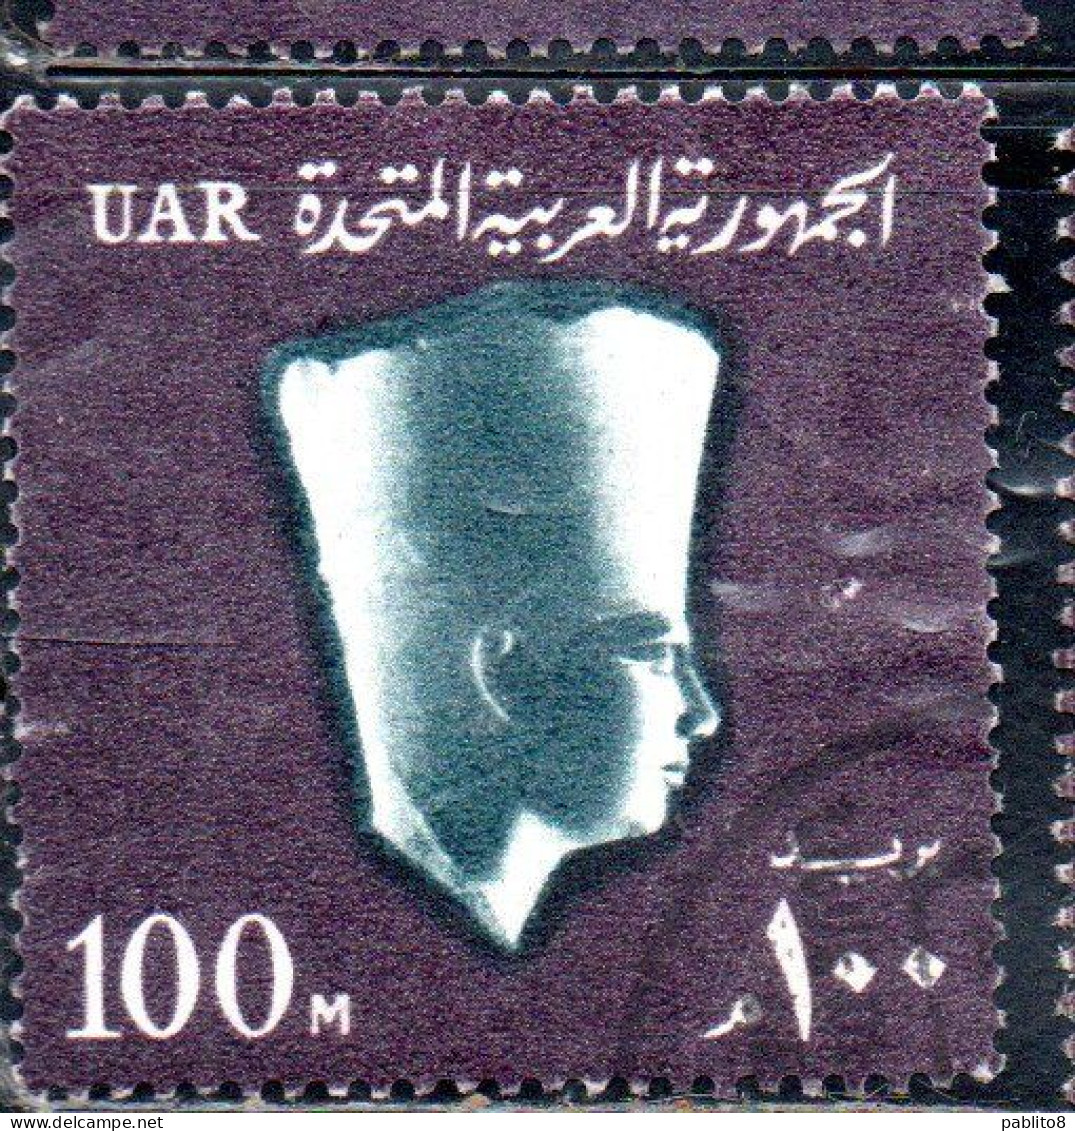 UAR EGYPT EGITTO 1964 1967 PHARAOH USERKAF 5th DYNASTY 100m USED USATO OBLITERE' - Gebraucht